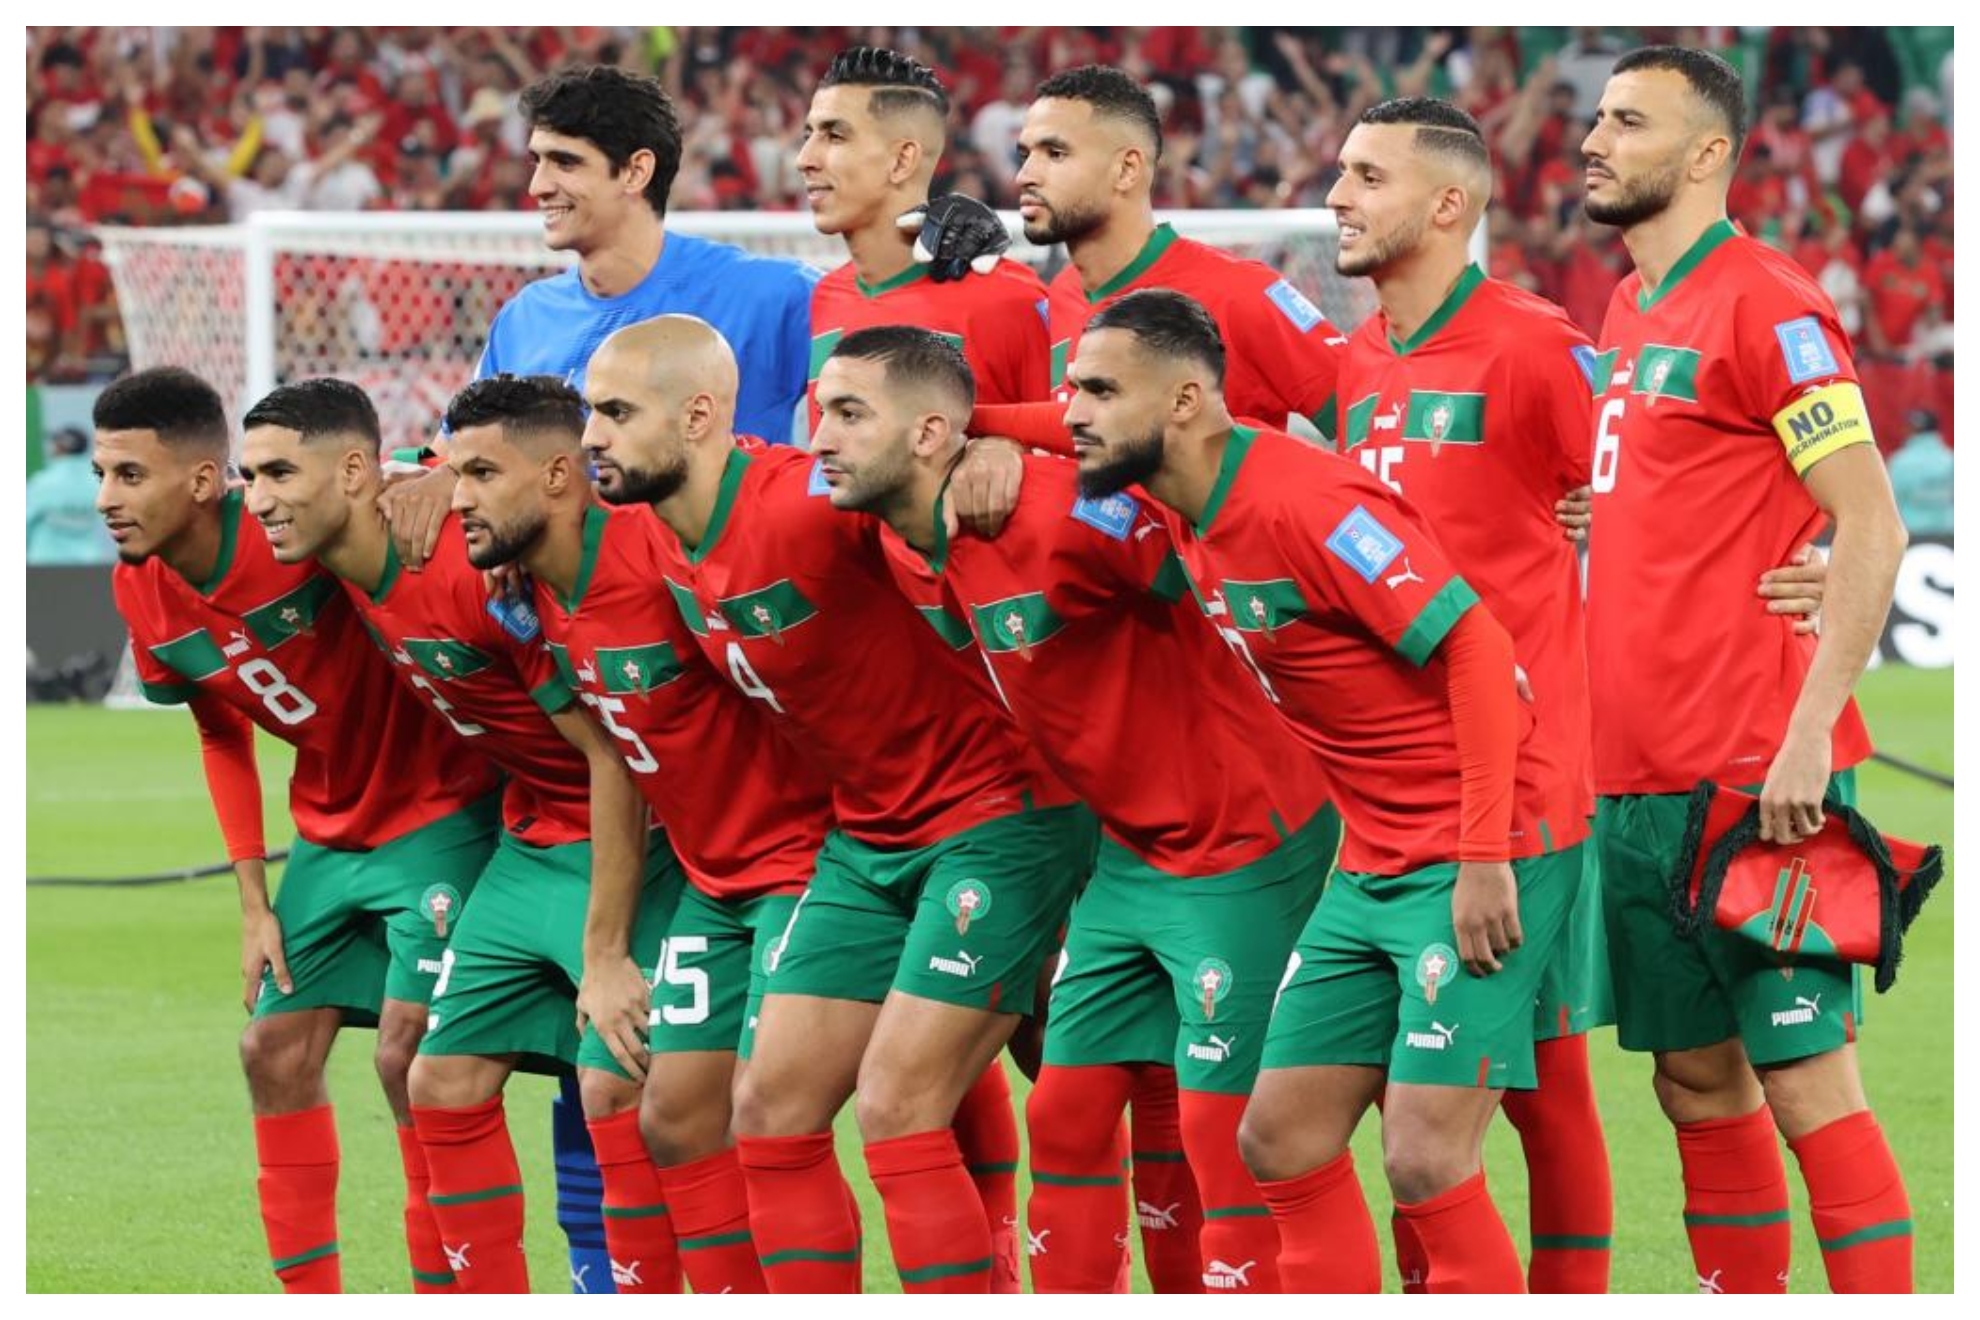 La selección de Marruecos posa antes de su partido de cuartos ante Portugal.